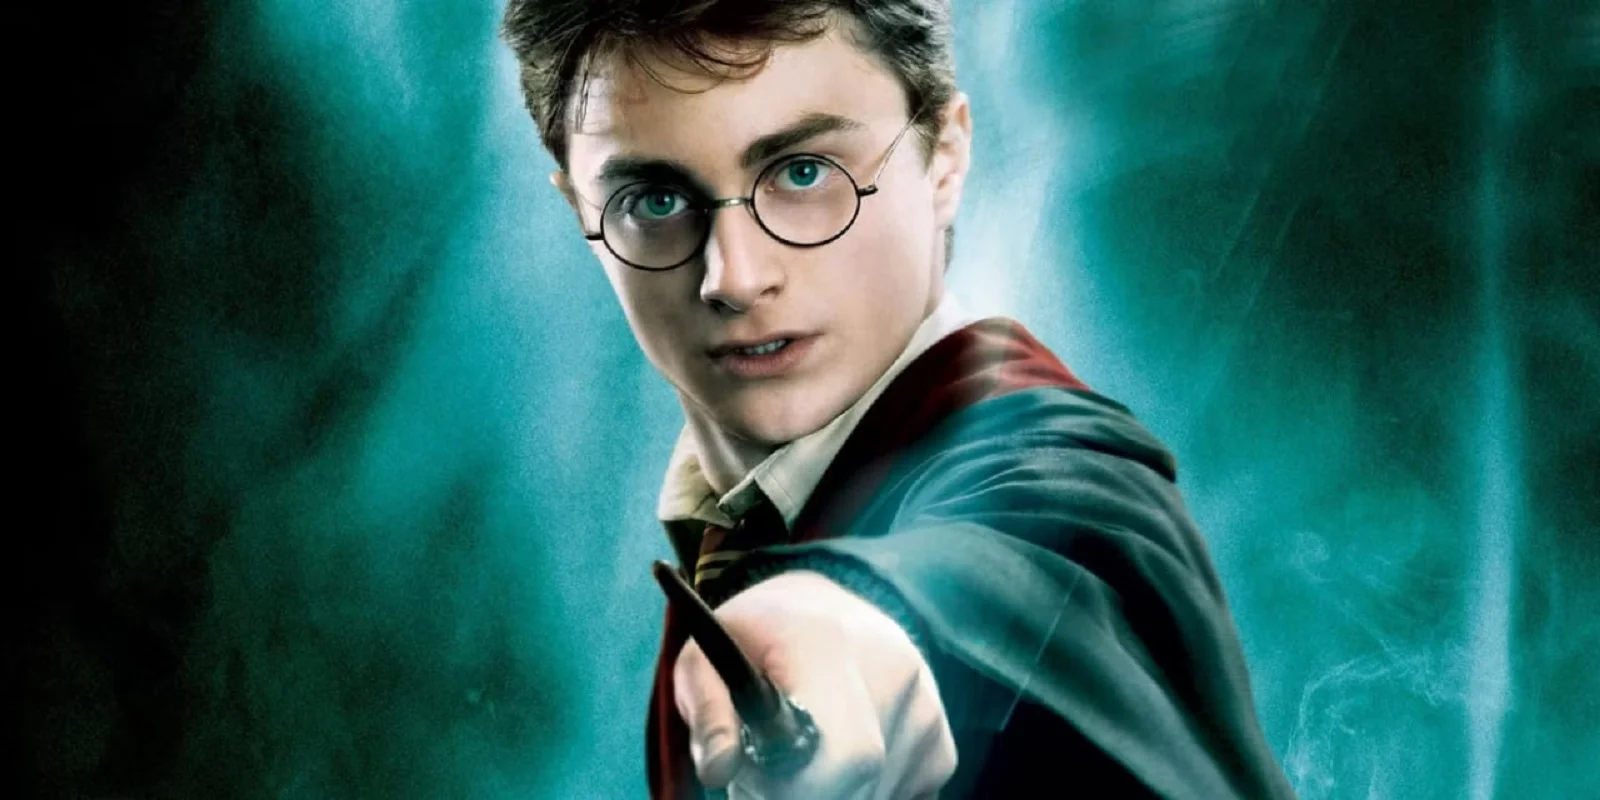 Portada: cartel de la película “Harry Potter y la Orden del Fénix”